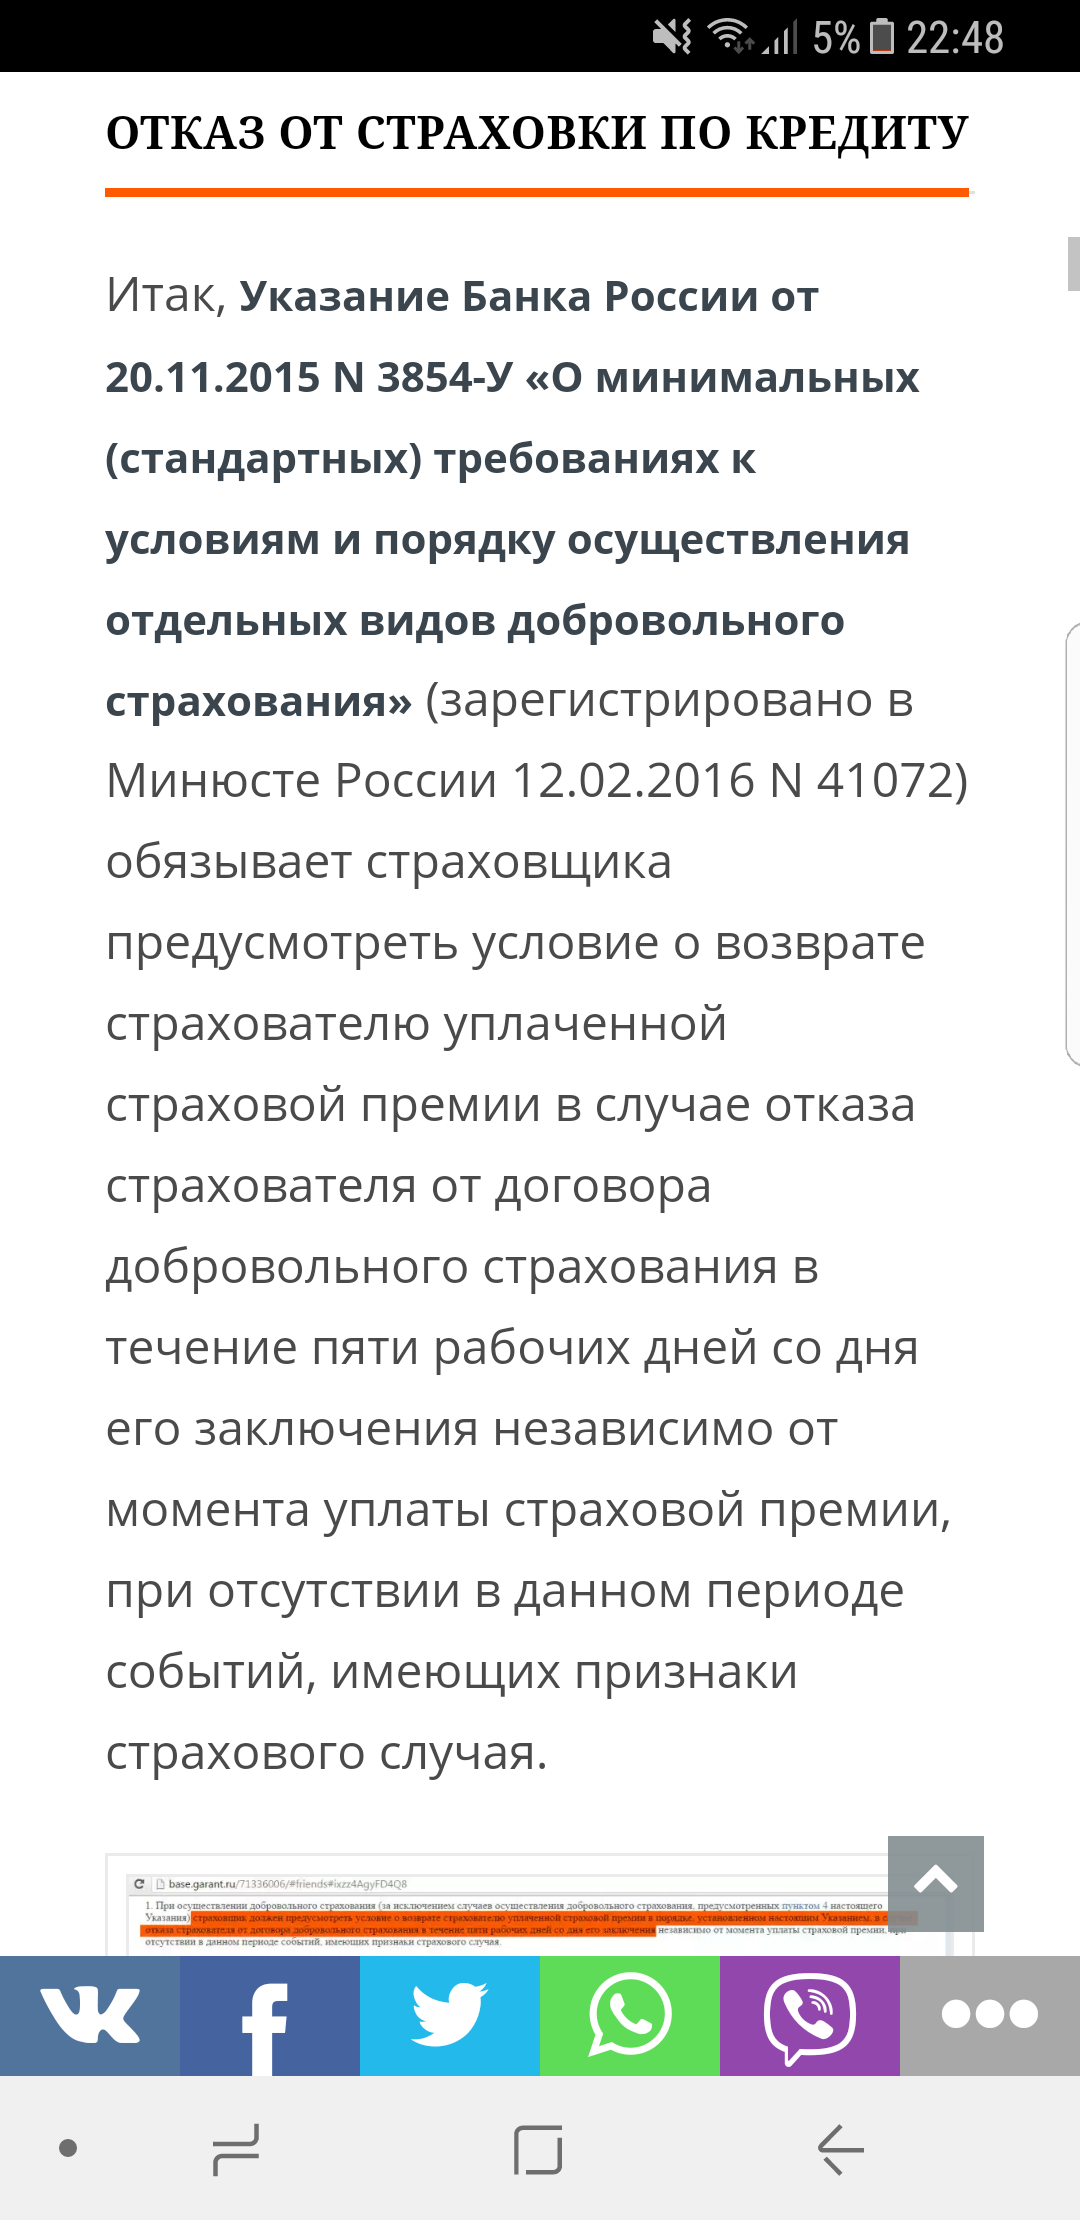 Саяногорск Инфо - screenshot_20170622-224806.png, Скачано: 473